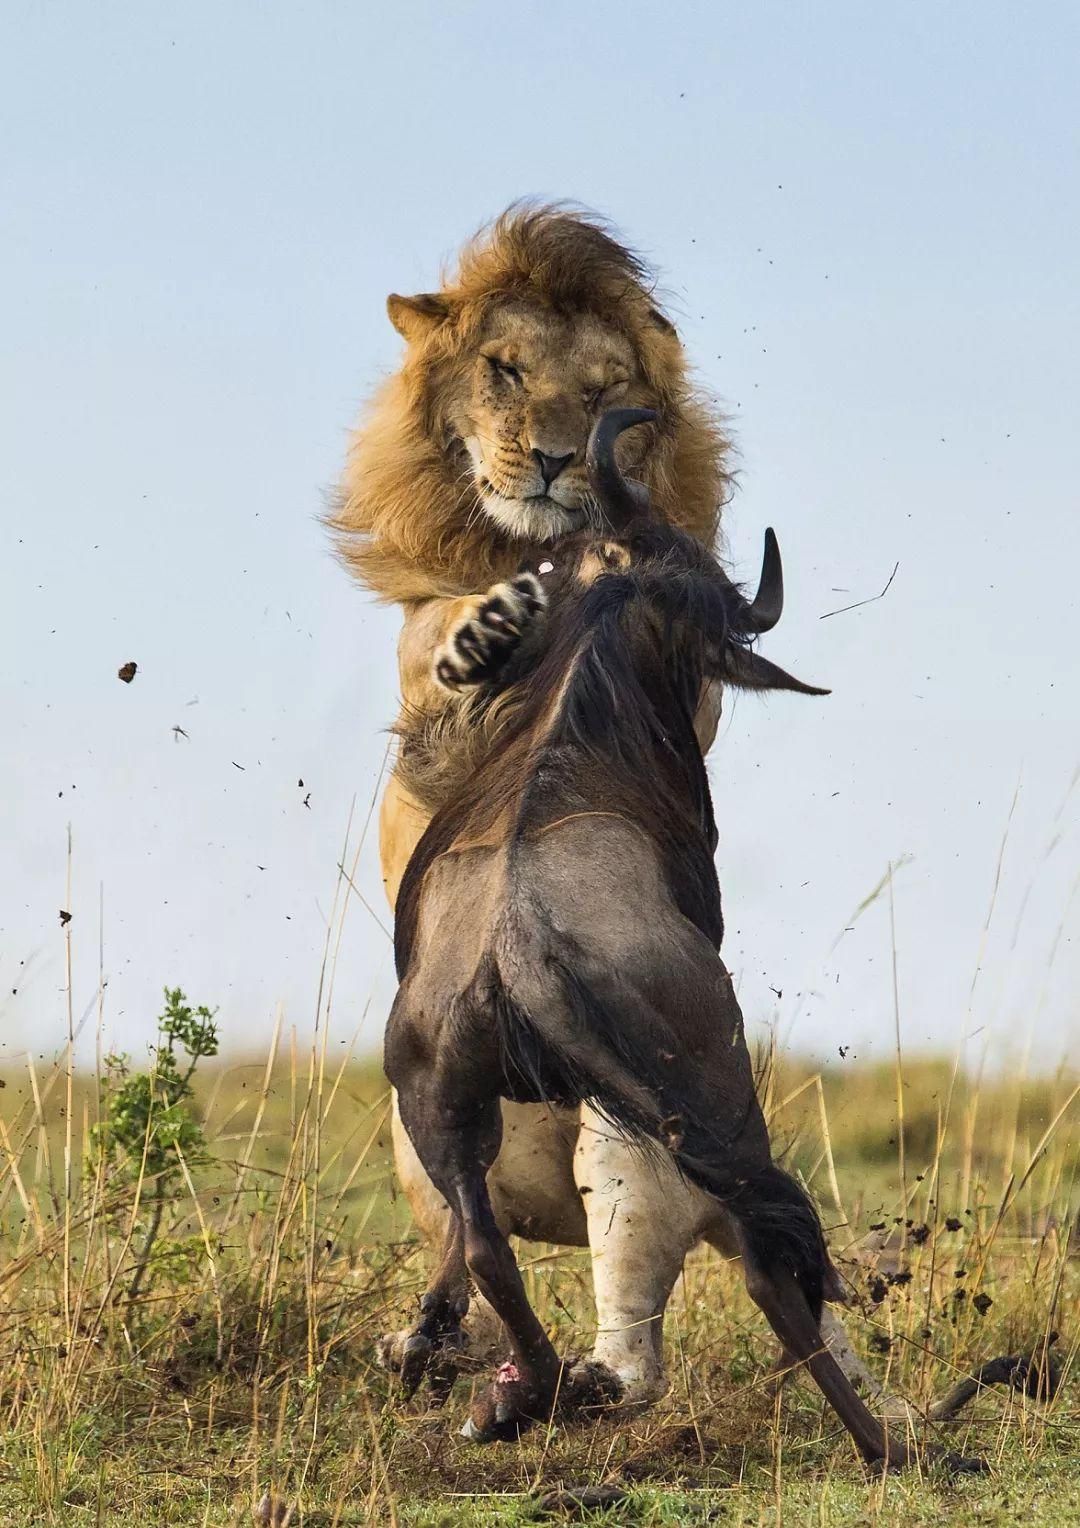 狮子捕猎一只怀孕的斑马 扑倒在地进行撕咬斑马无能为力太残-千里眼视频-搜狐视频